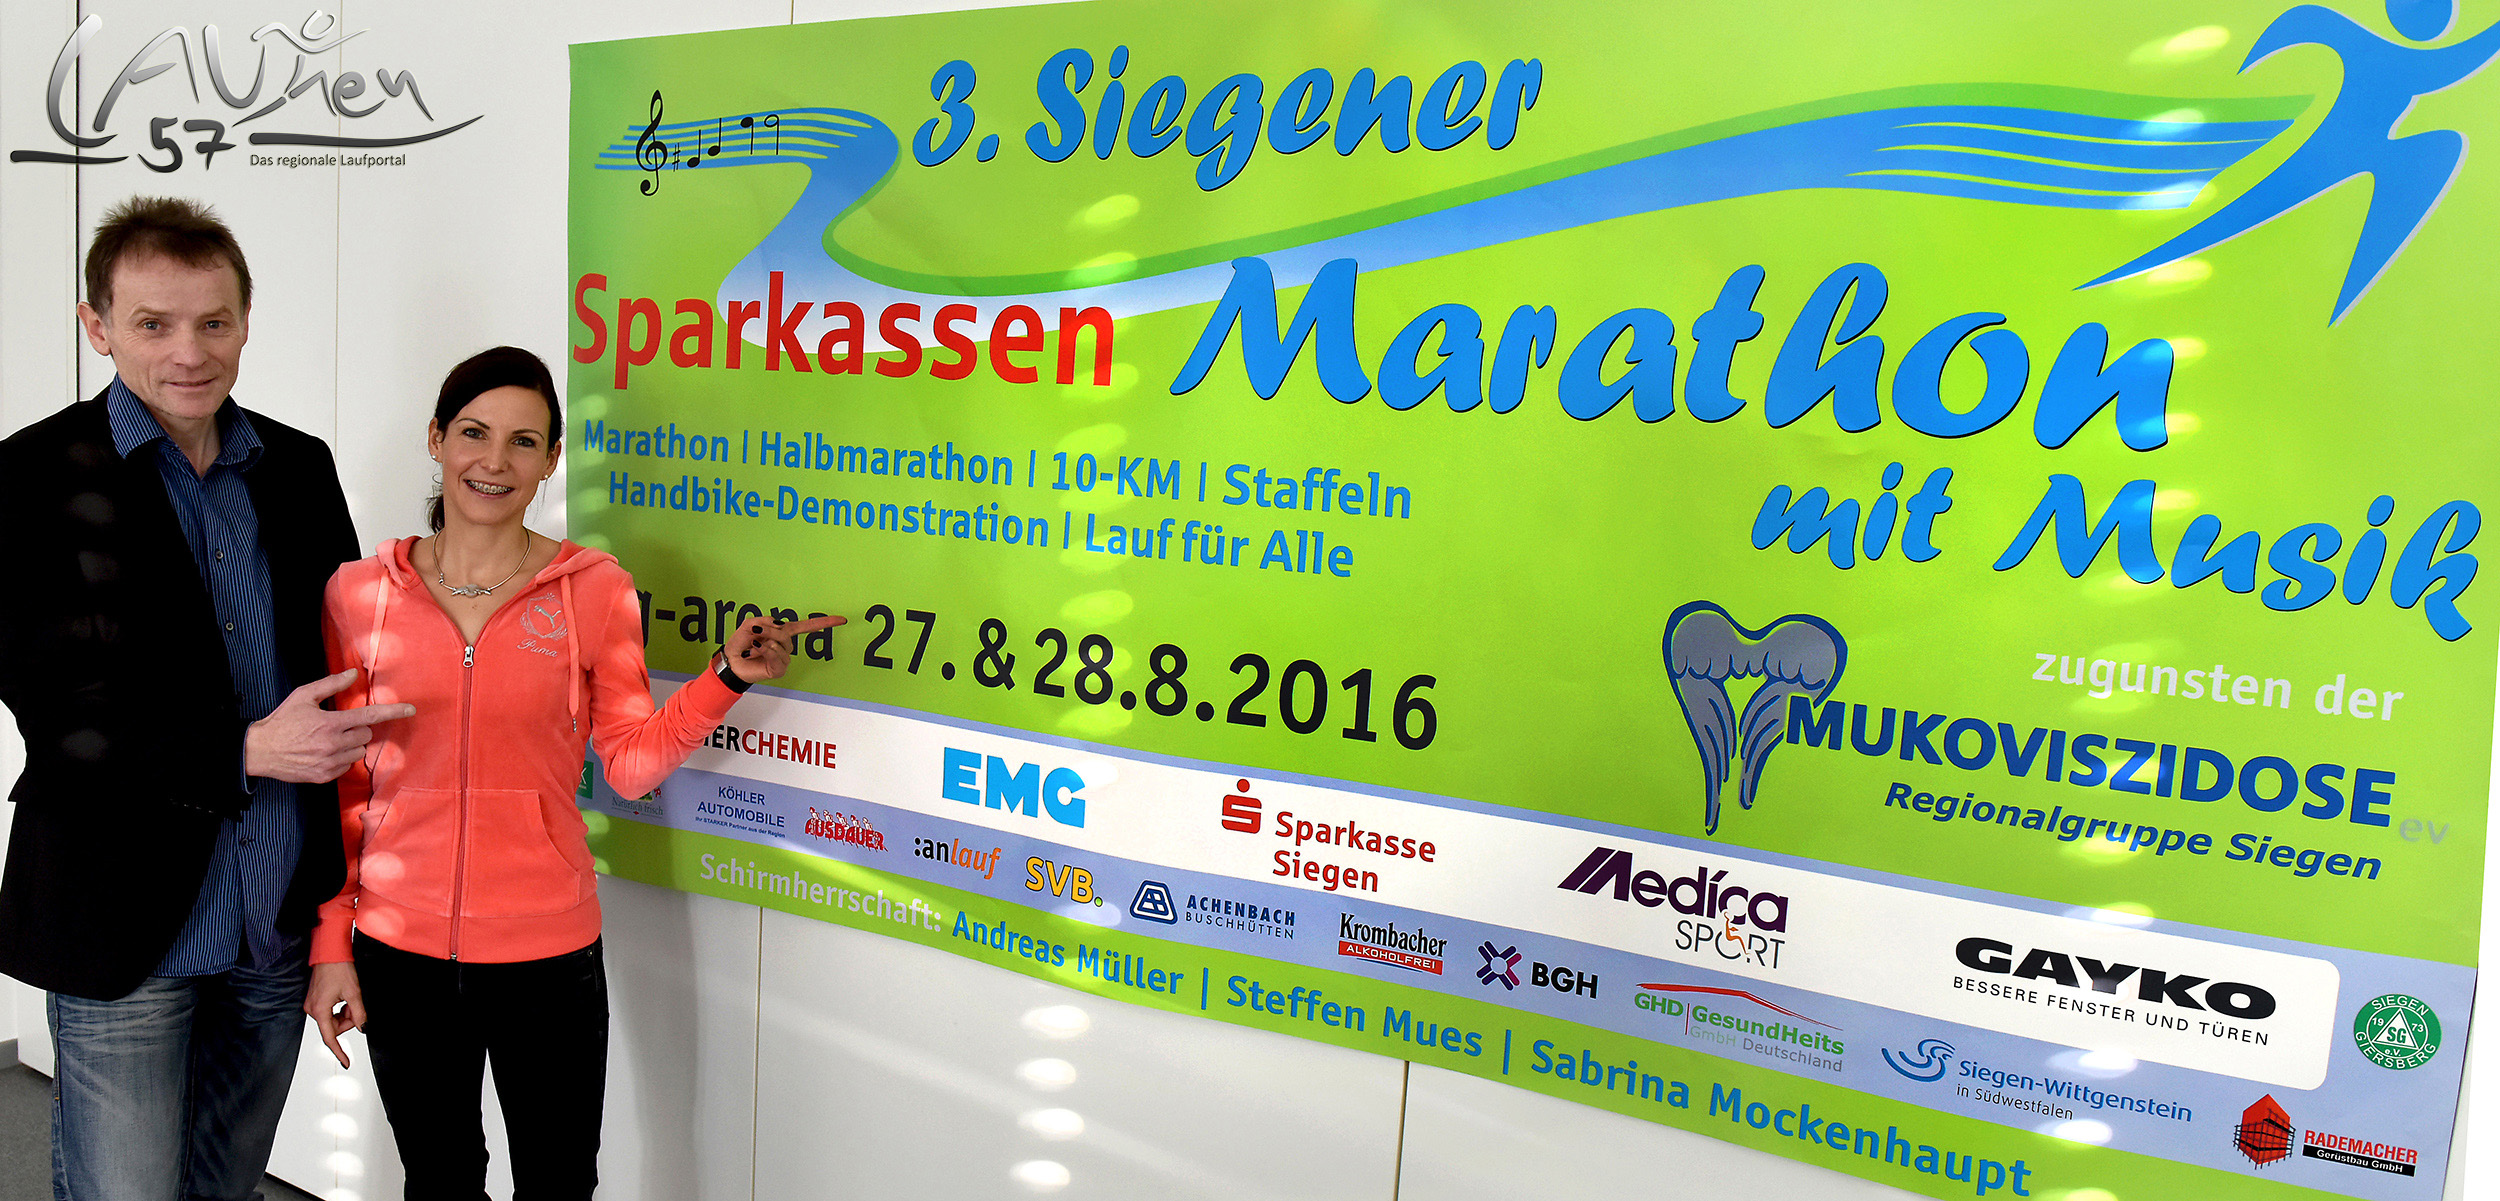 1. Pressekonferenz zum 3. Siegener Sparkassen-Marathon mit Musik